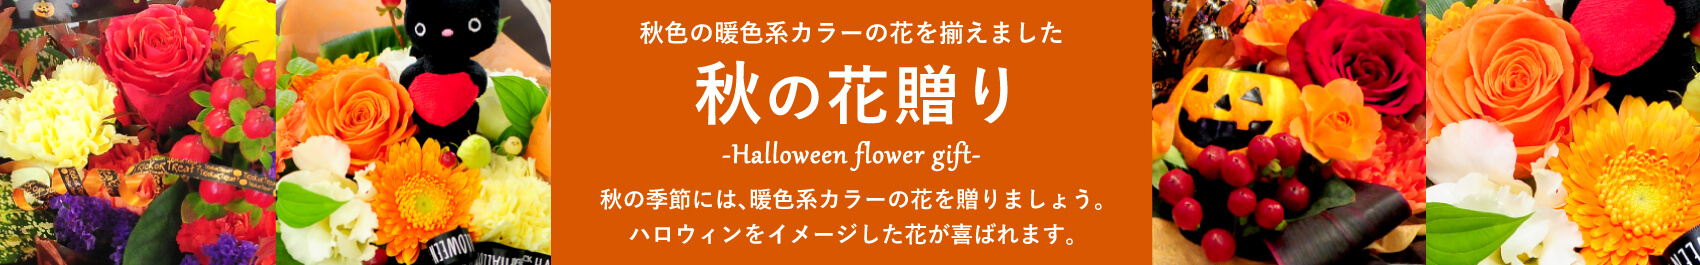 秋の花贈り ハロウィン-Halloween- 花ギフト